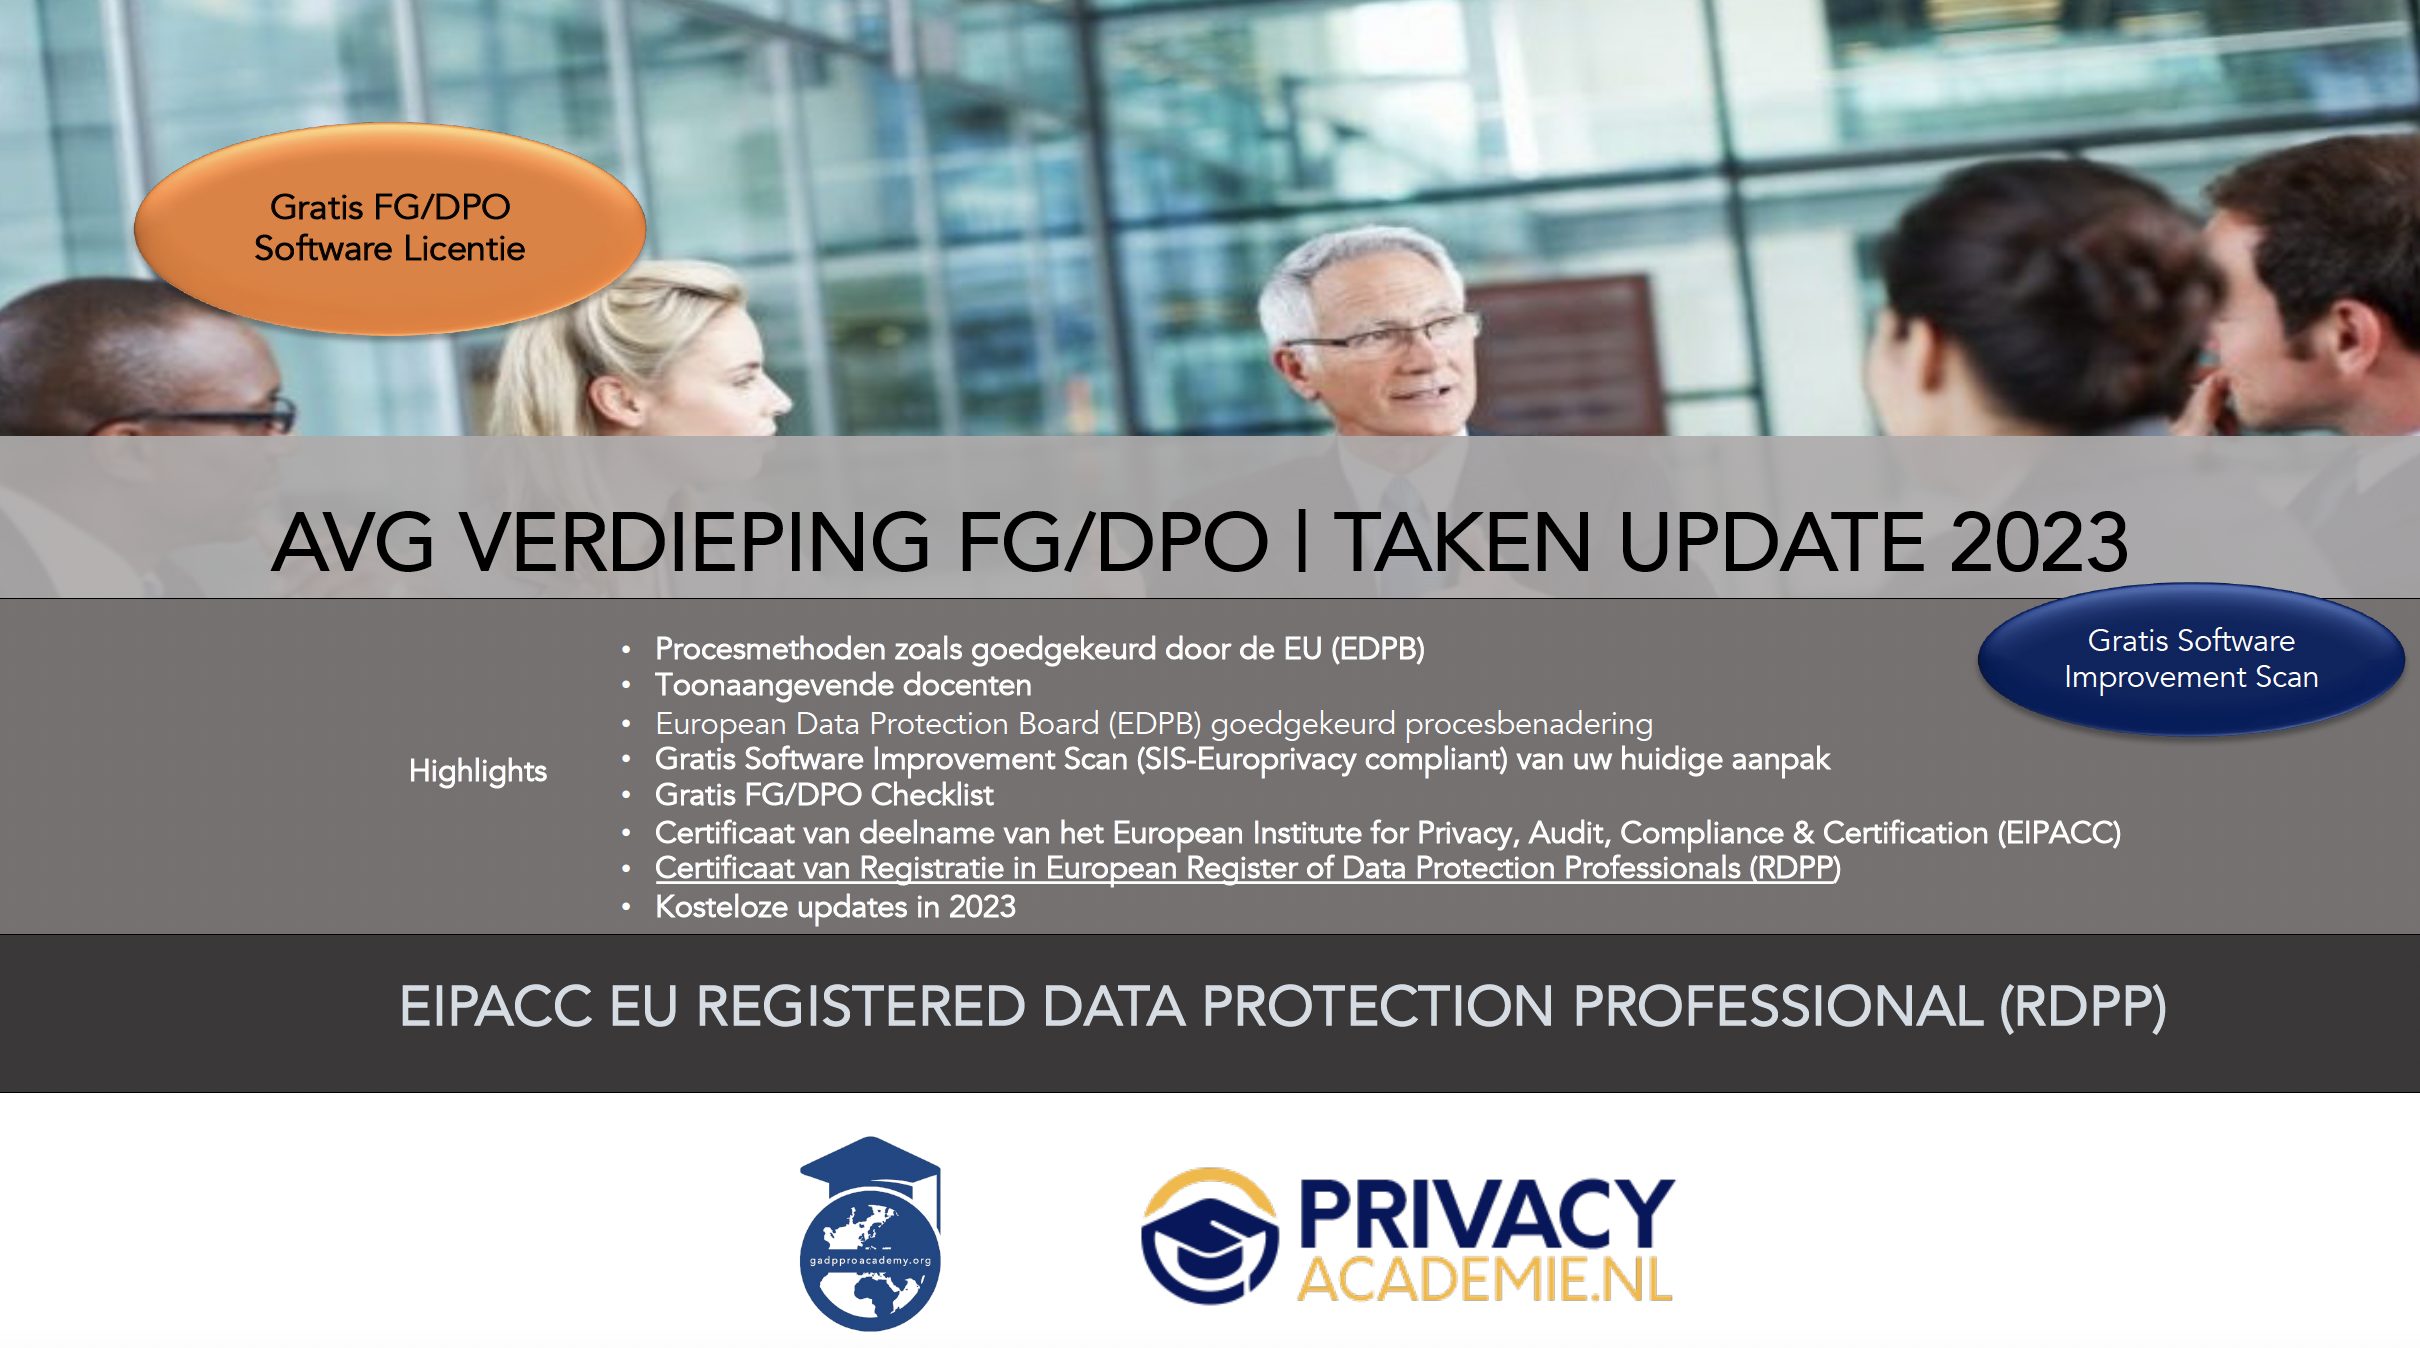 1 AVG Verdieping Update Taken FG DPO www.privacyacademie.nl